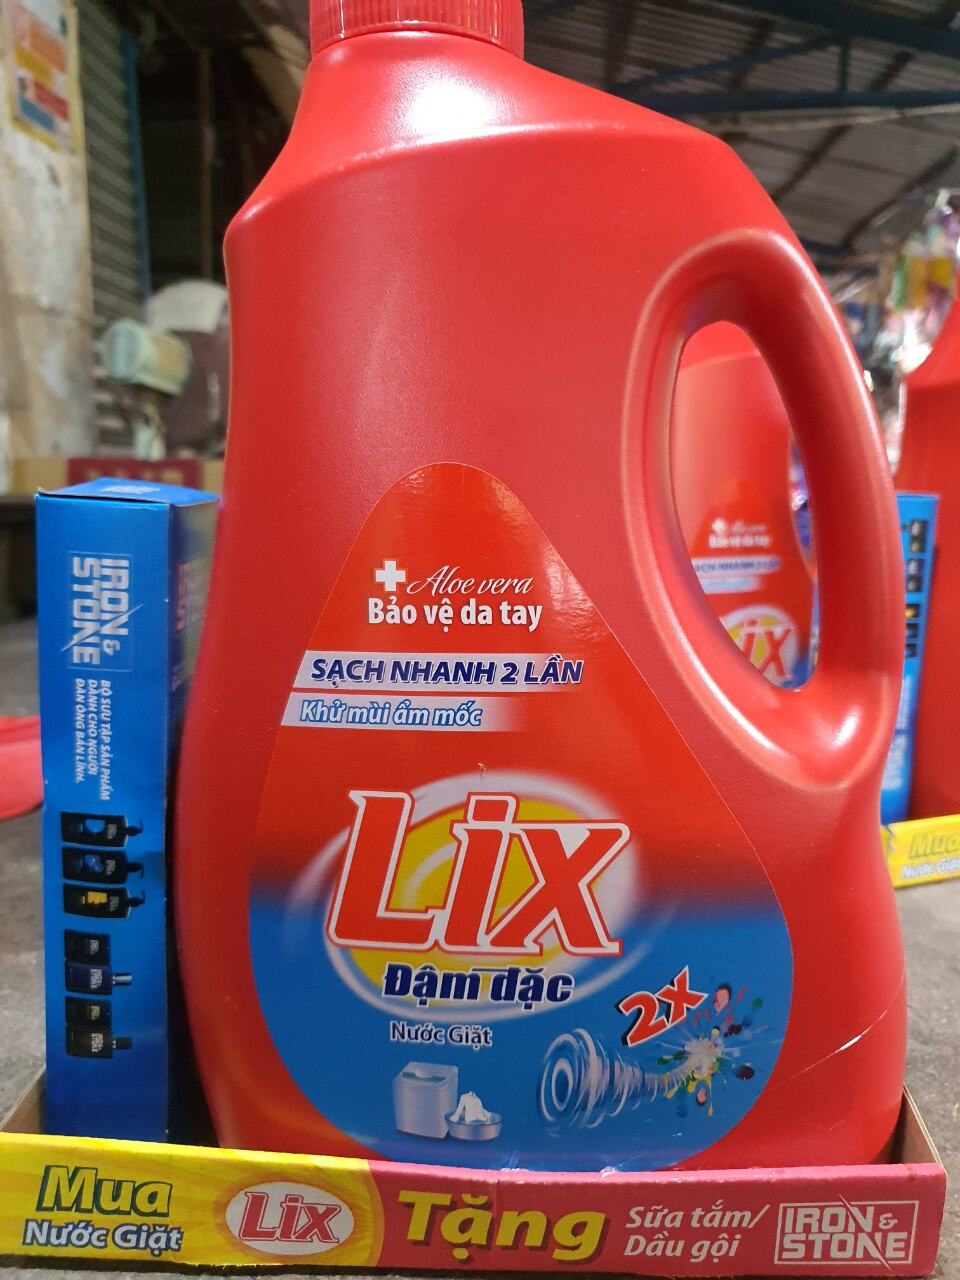 Nước giặt Lix 3.6kg giá 135k bình